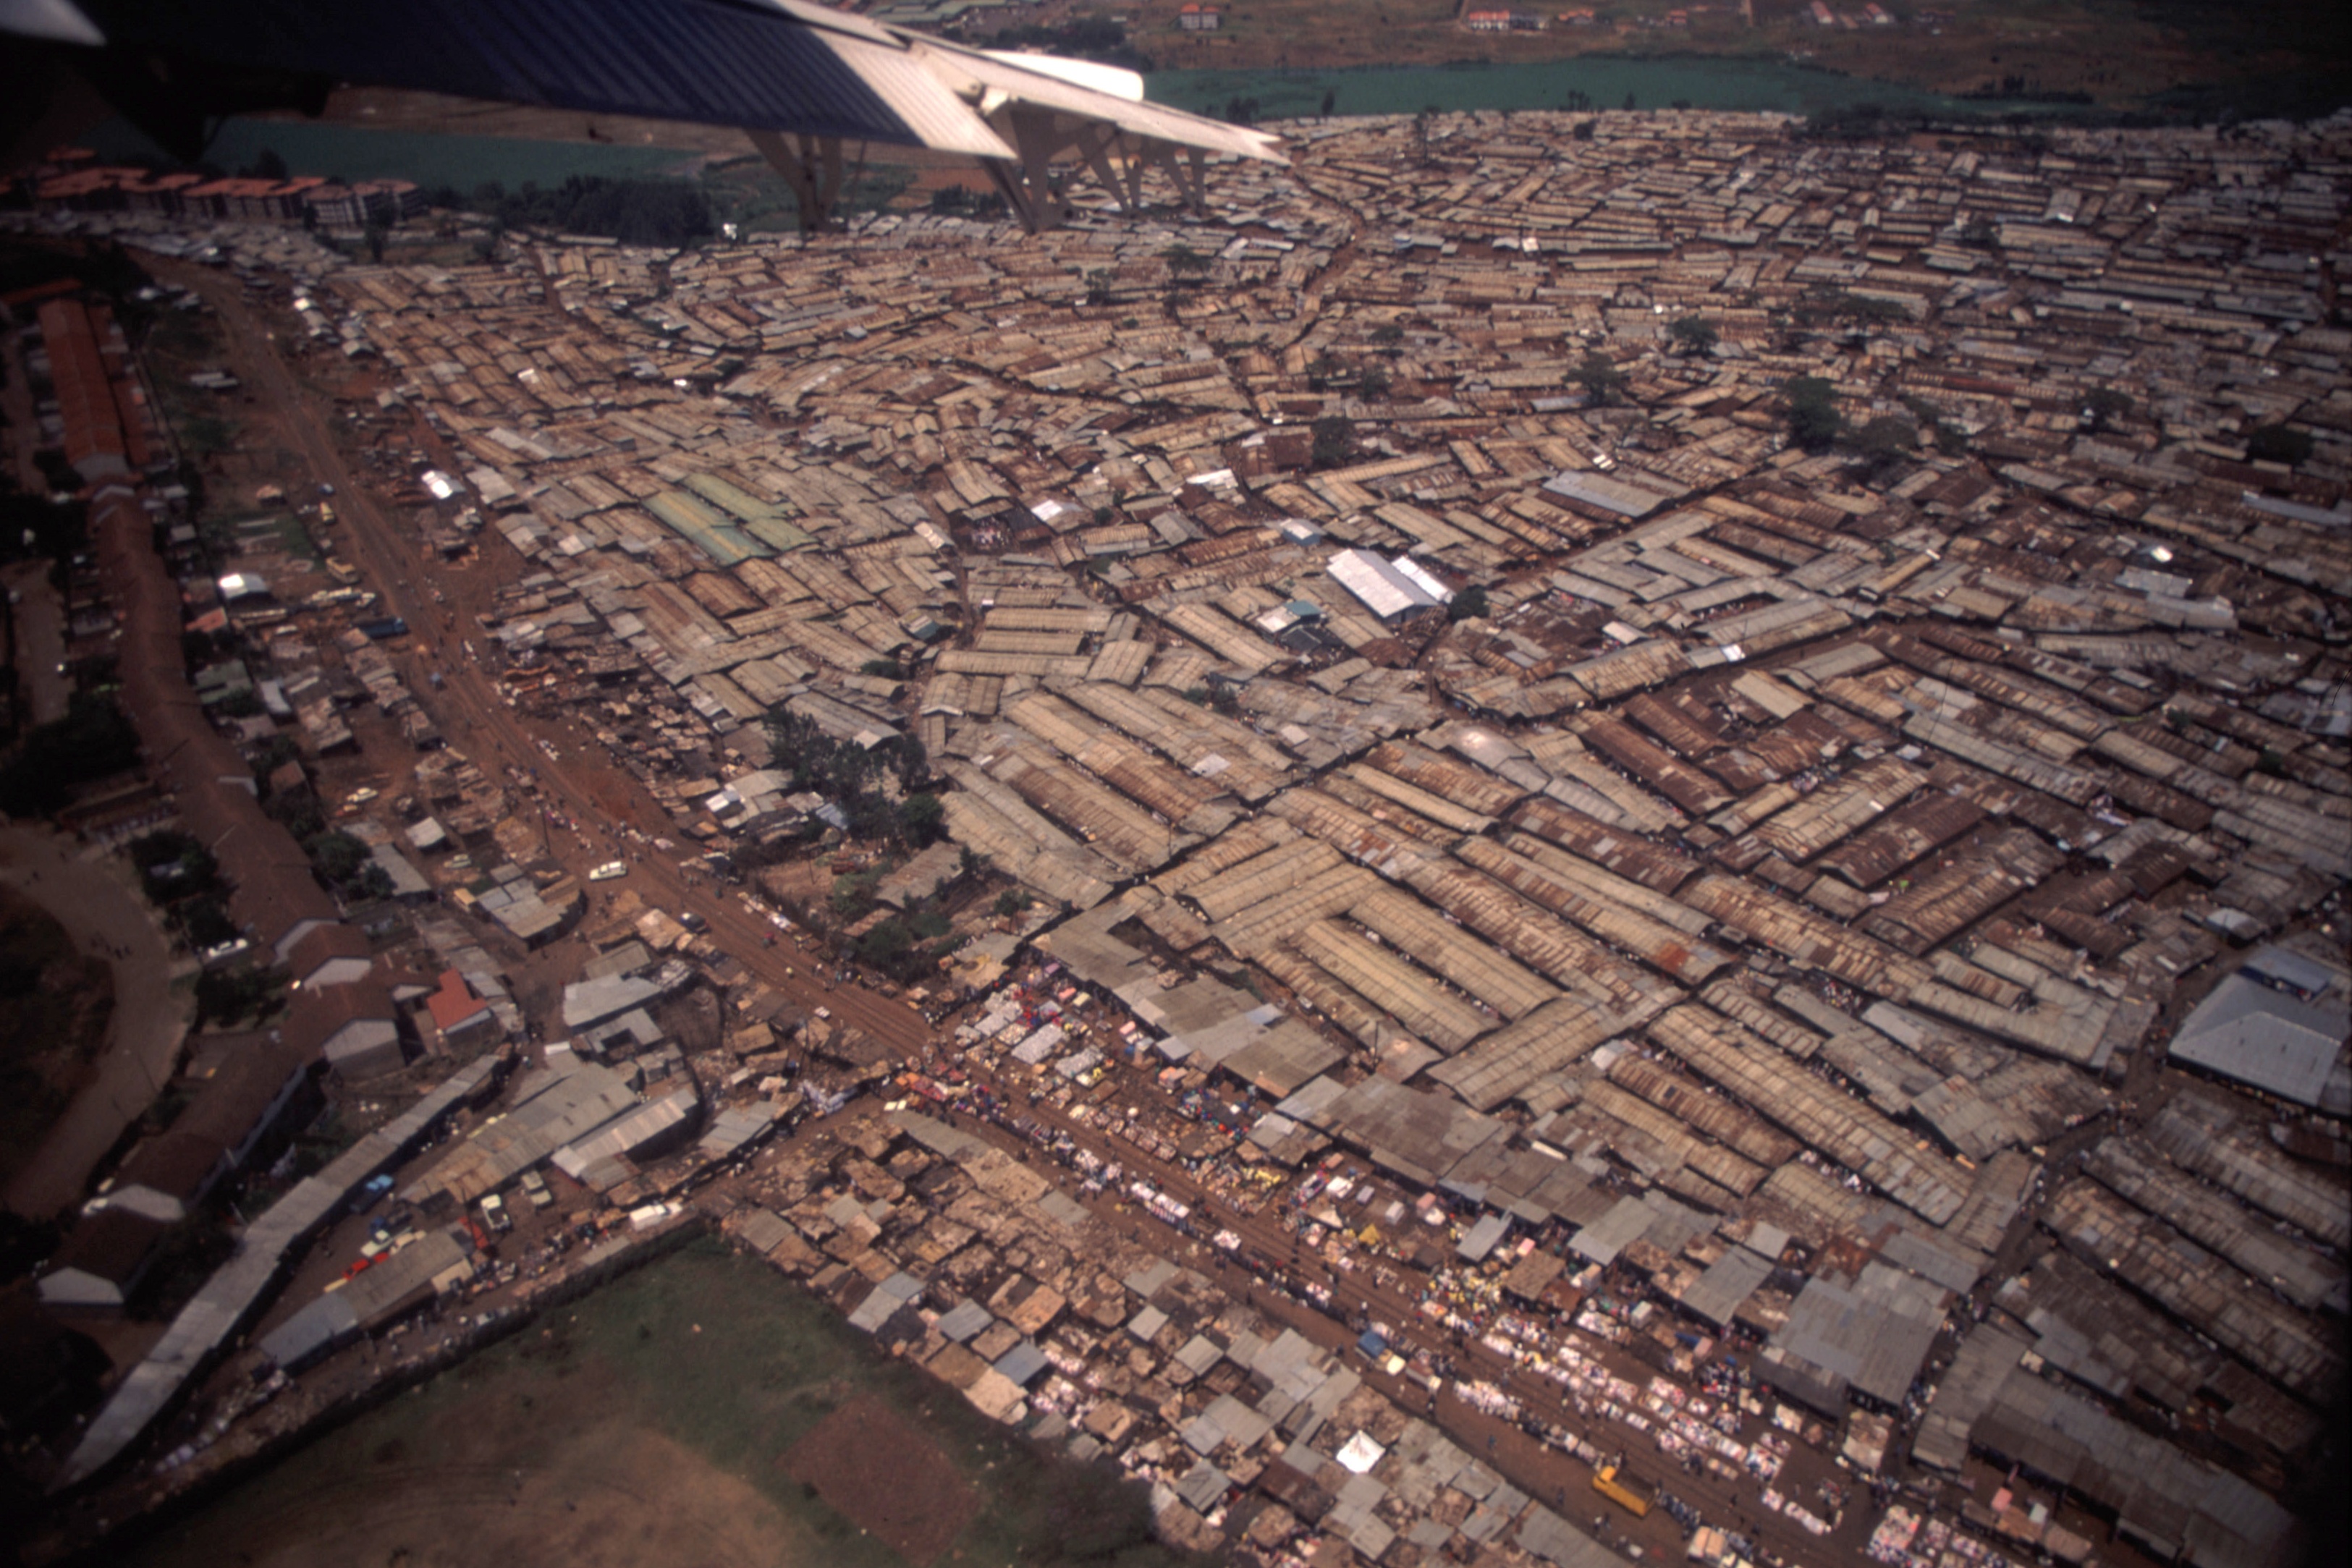 אורבניזציה מואצת ועוני מתפשט. סלאמס בניירובי (צילום: John Storr, ויקימדיה, צילום ברישיון Public Domain)